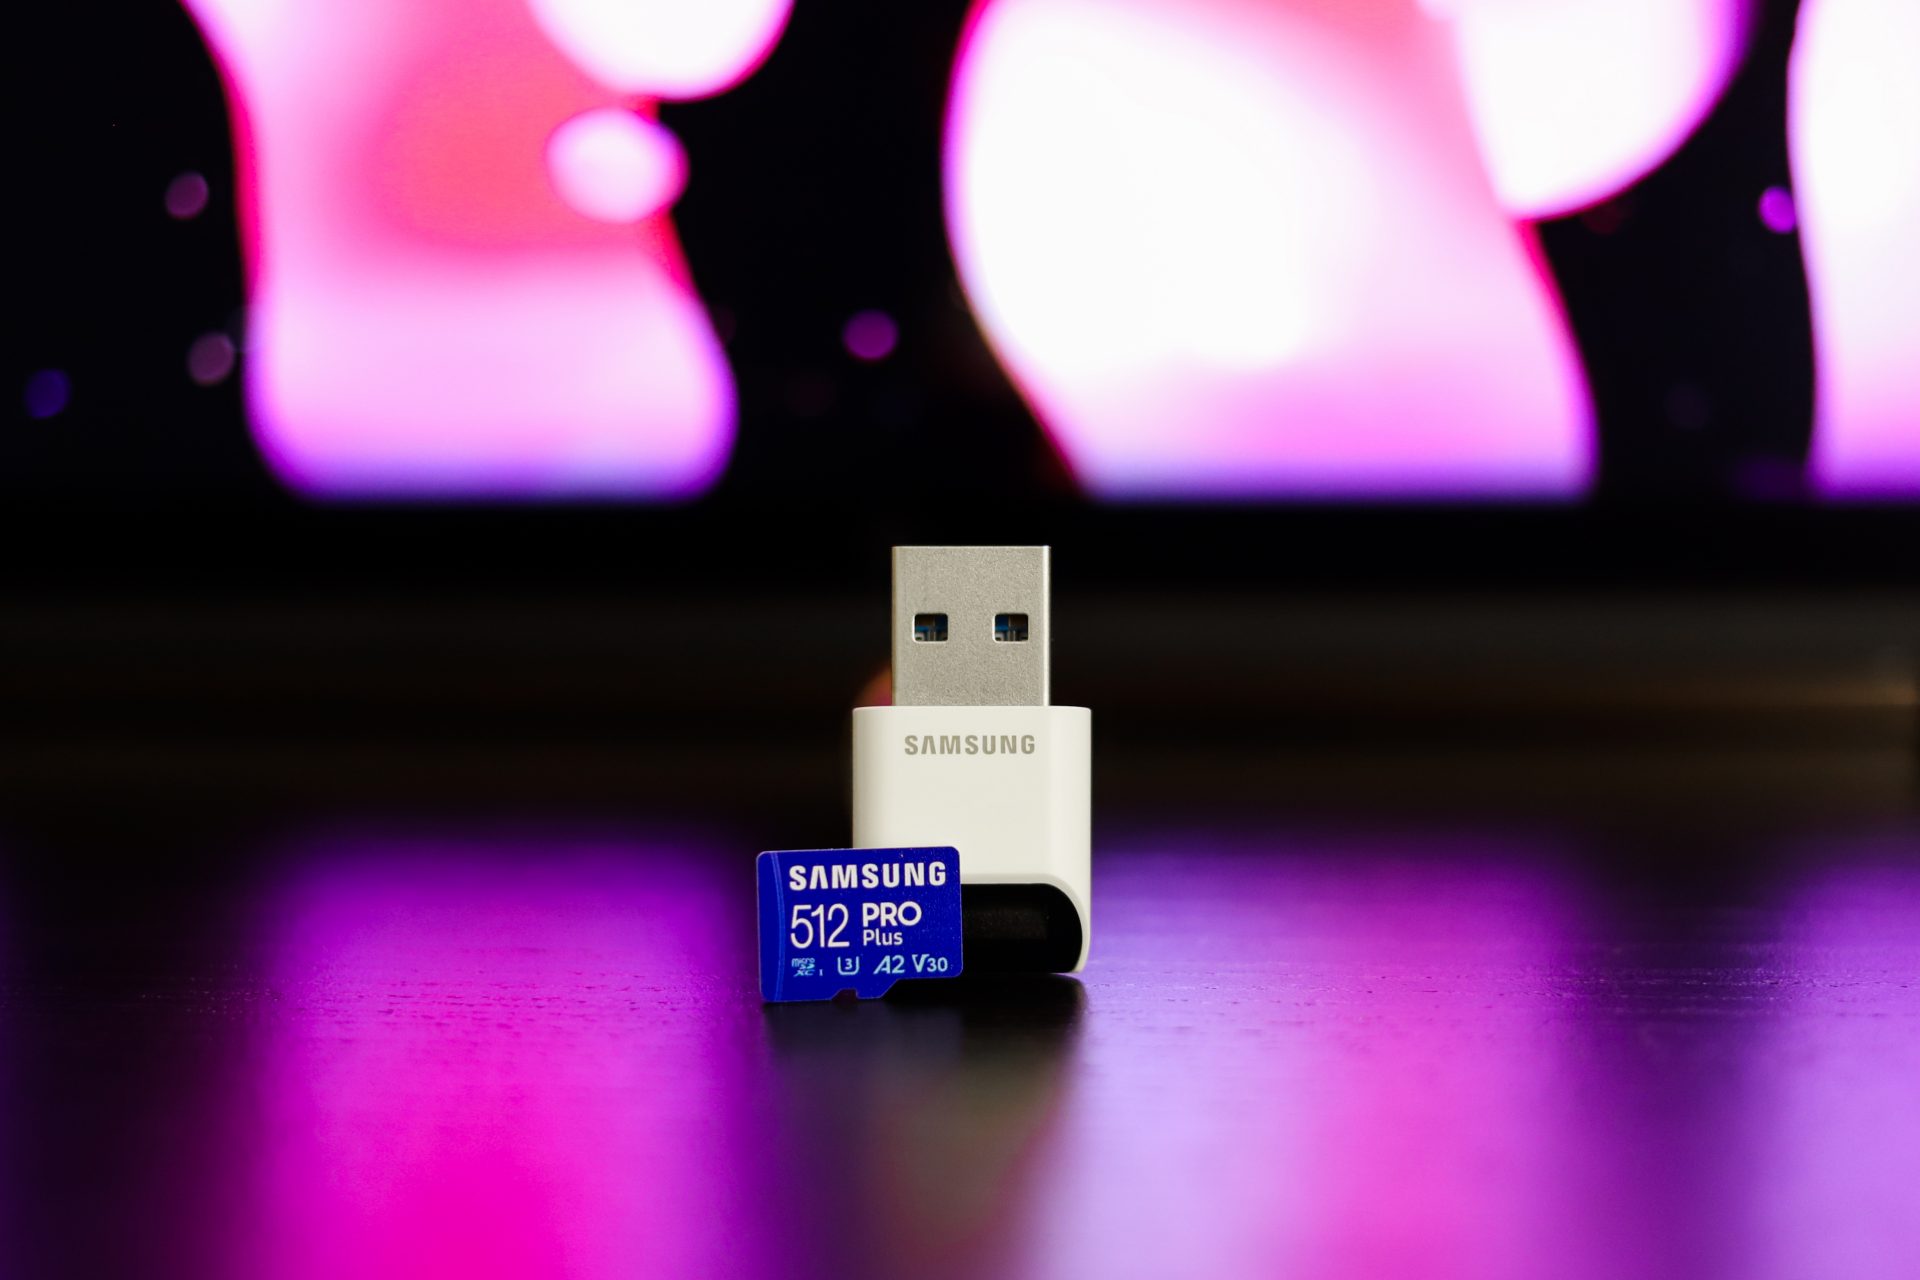 Samsung PRO Plus microSD 512 Go - Carte mémoire - Garantie 3 ans LDLC